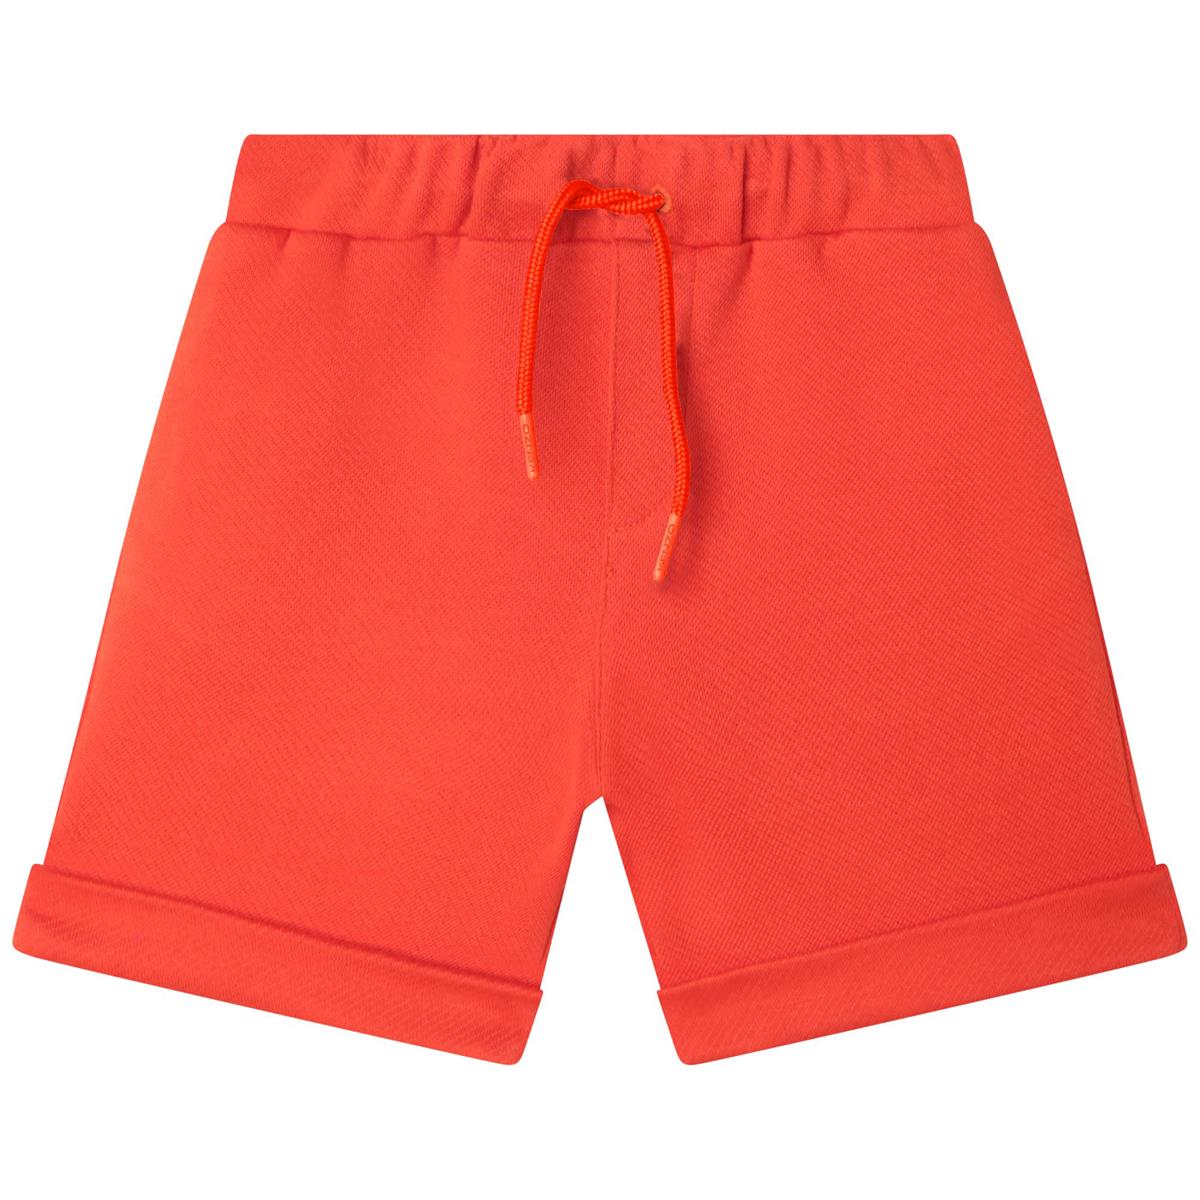 Boys Orange Shorts